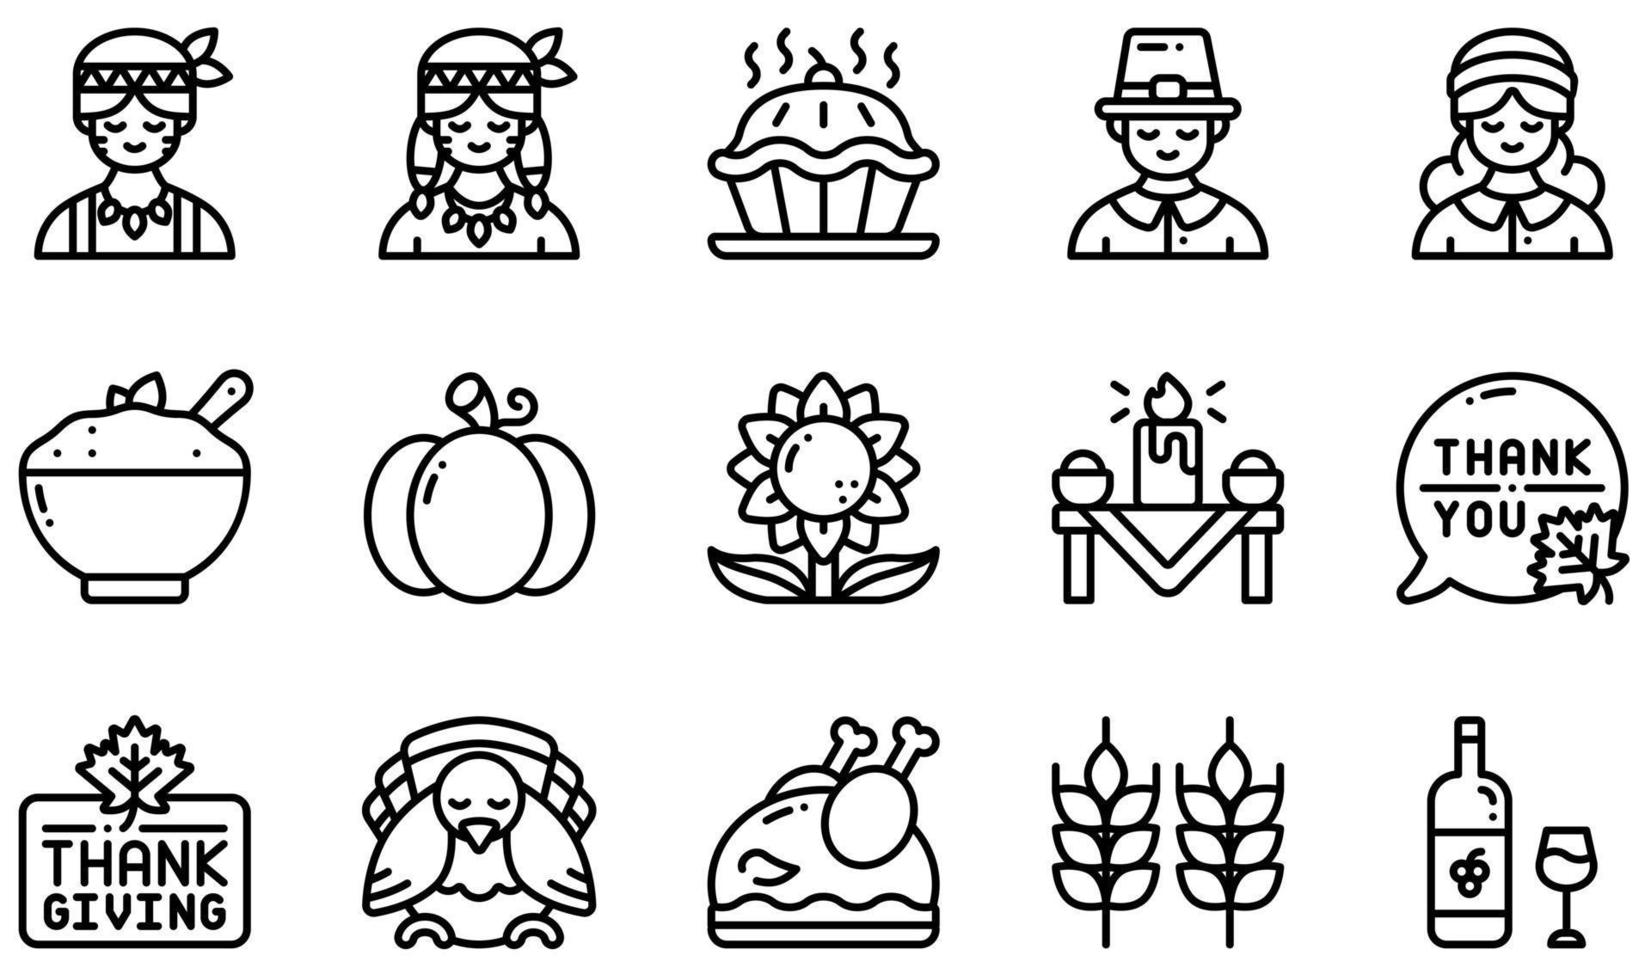 set di icone vettoriali relative al ringraziamento. contiene icone come torta, pellegrino, nativi americani, zucca, ringraziamento, tacchino e altro ancora.